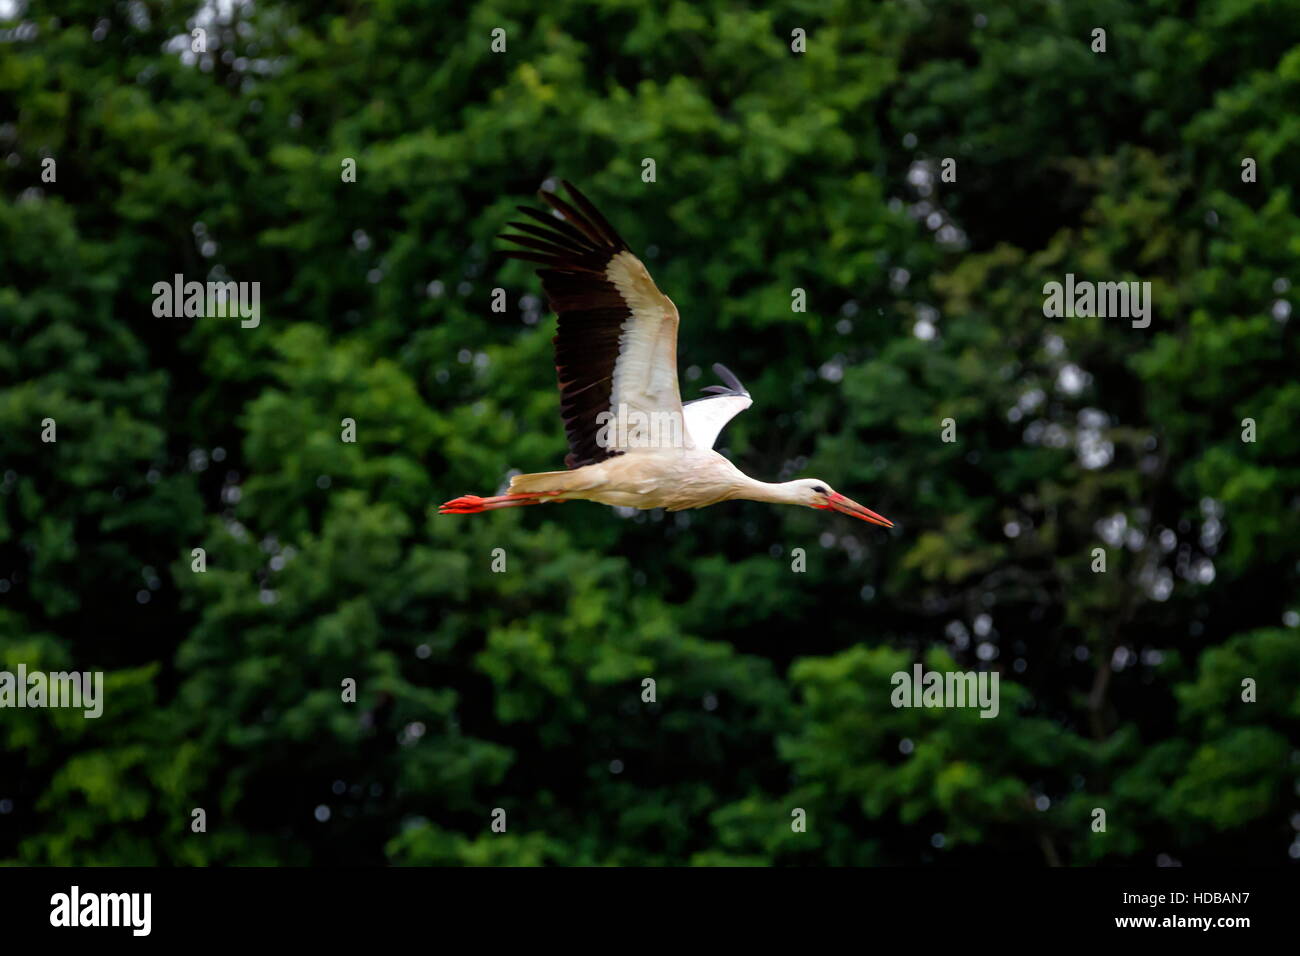 Unione cicogna bianca, ciconia, volare nella parte anteriore degli alberi Foto Stock